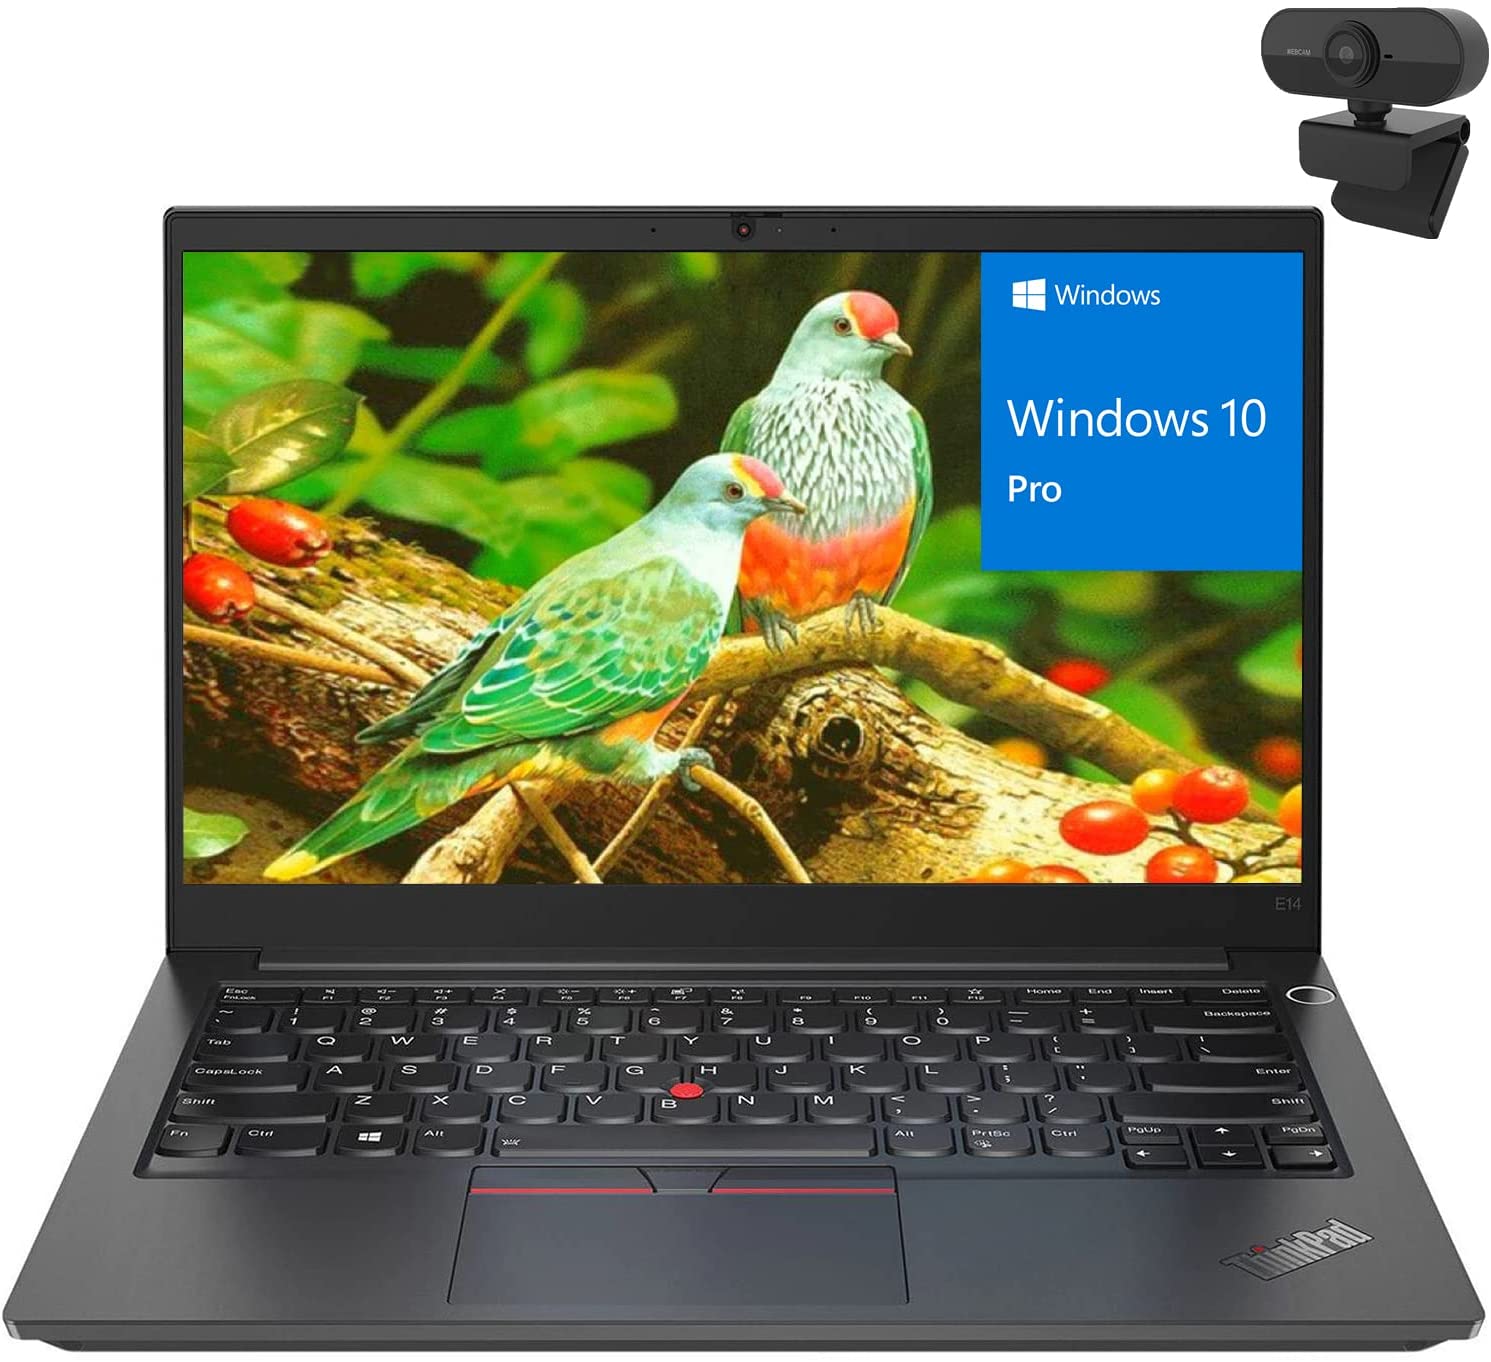 联想ThinkPad E14第三代评测--神奇的效率| LaptopMedia 中国